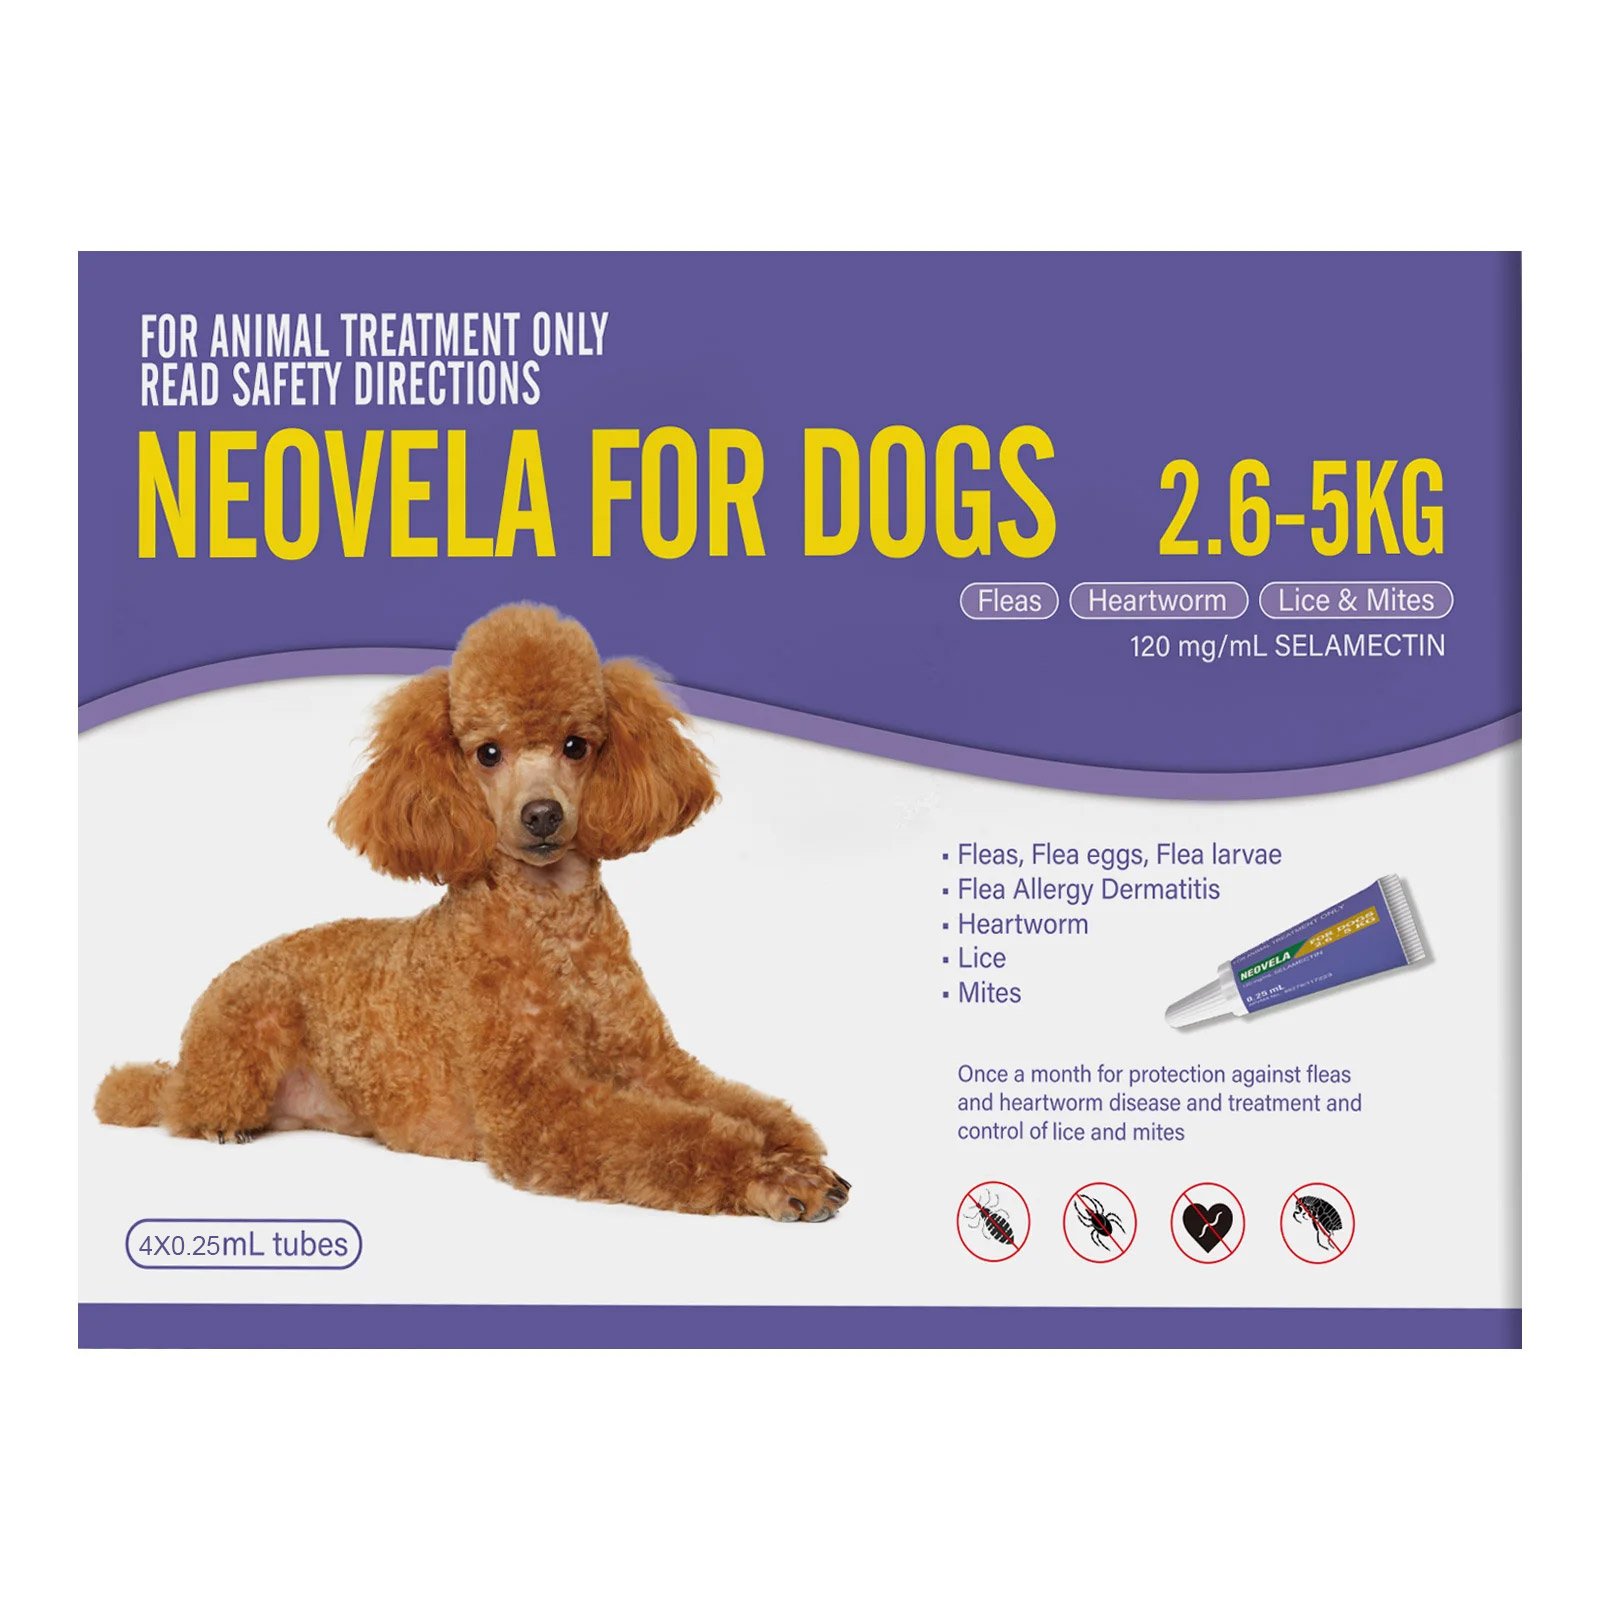 Neovela-for-dogs-2.6-5kg_08102023_043456.jpg